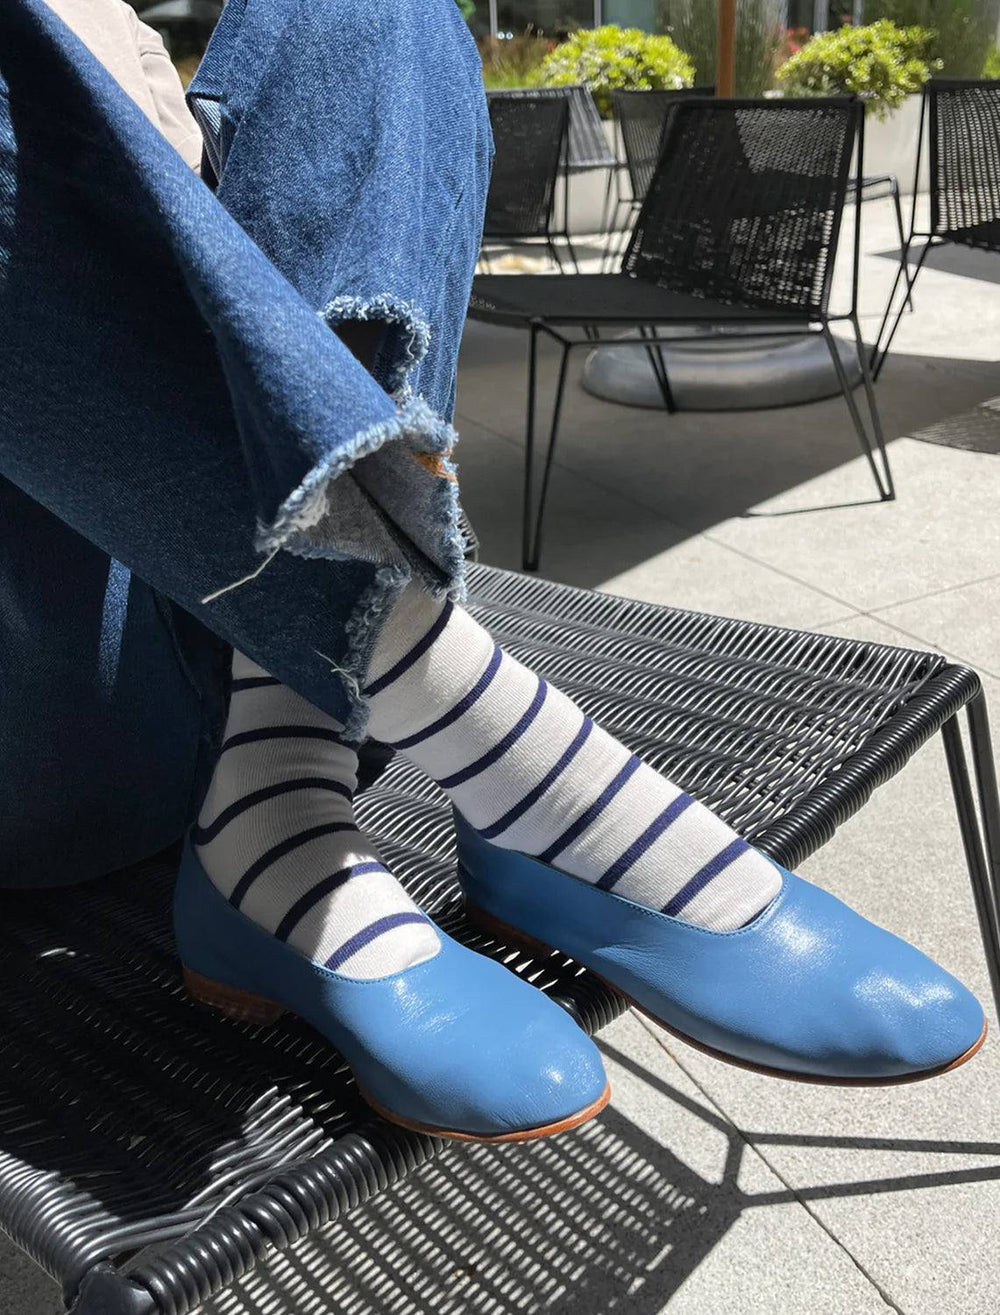 Le Bon Shoppe's wally socks in breton stripe